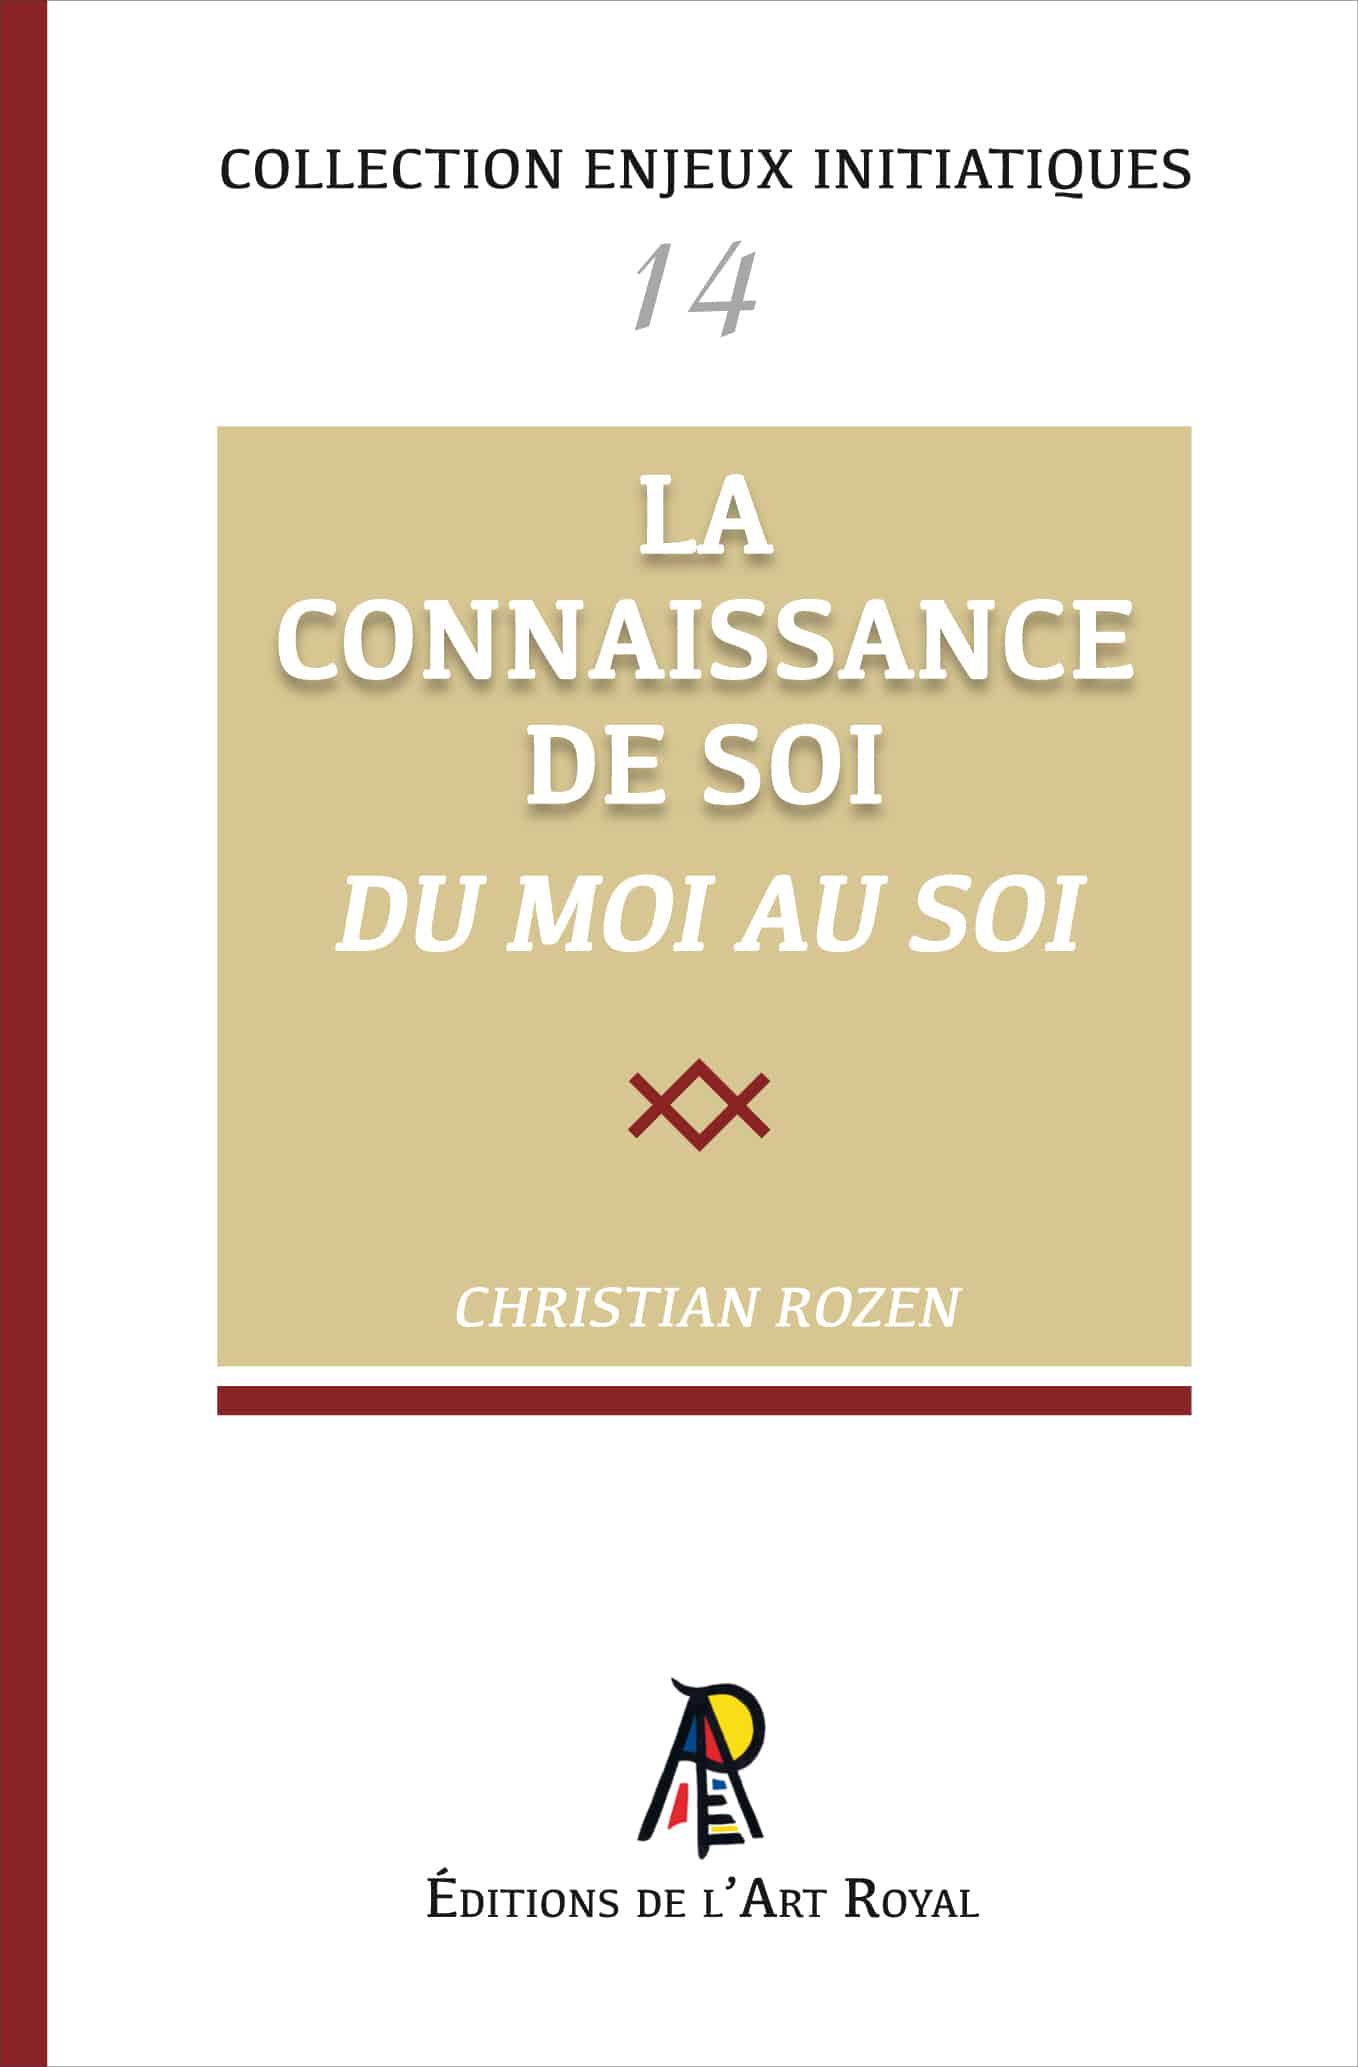 La Connaissance de Soi - Du moi au Soi, Christian Rozen